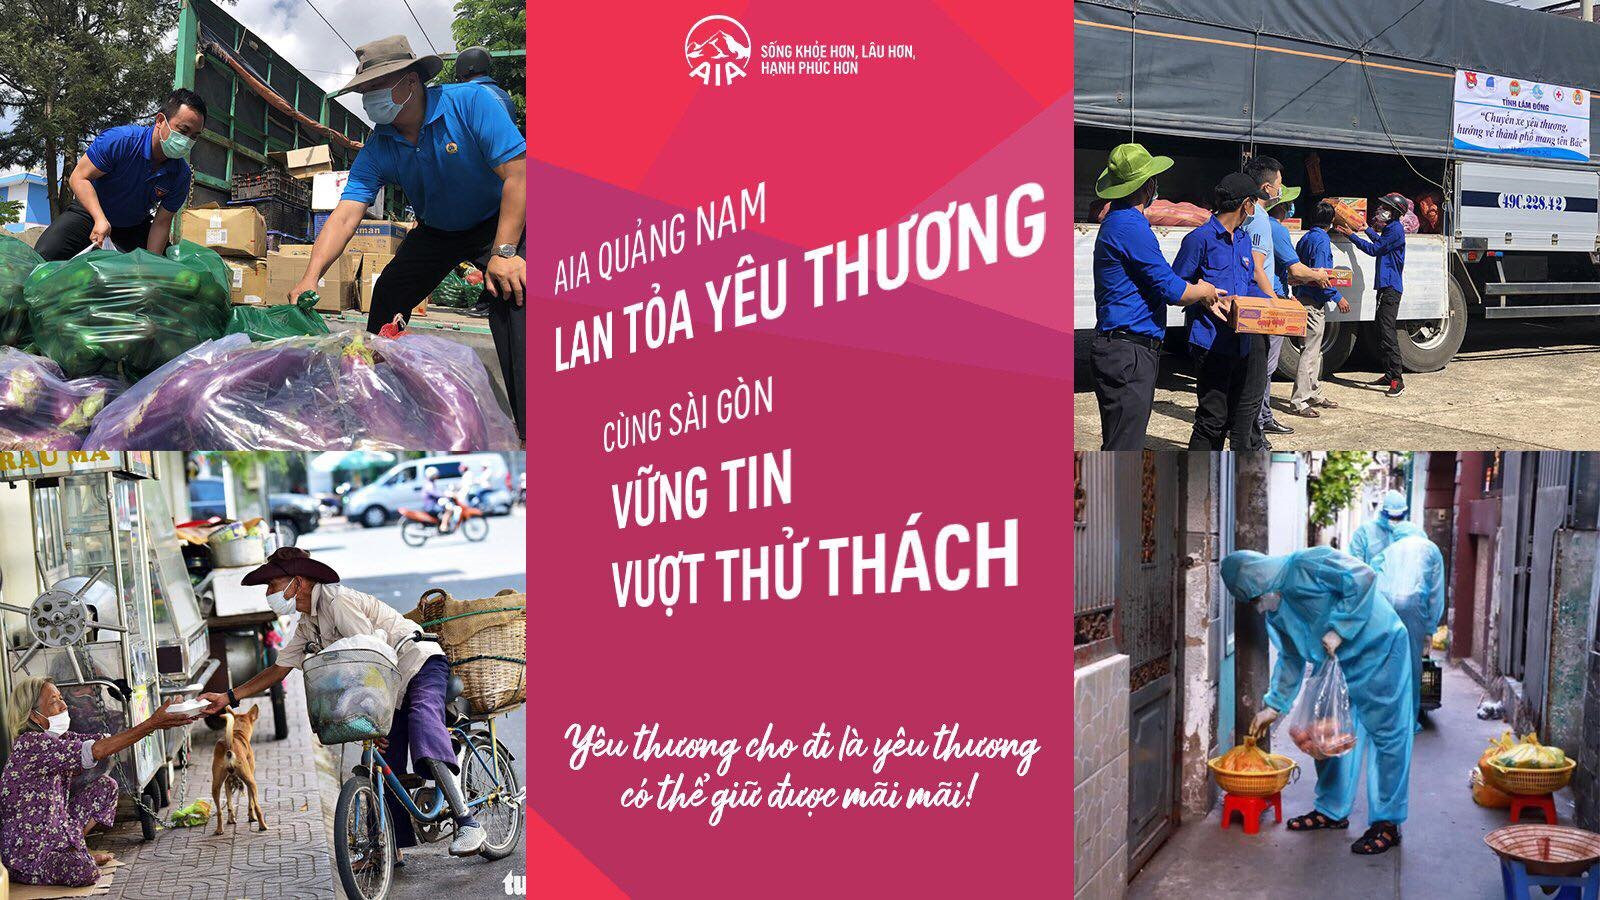 Tính đến hết ngày 15.7, AIA Quảng Nam đã vận động quyên góp được gần 45 triệu đồng từ tập thể đại lý, quản lý, nhân viên. Ảnh: Đ.T